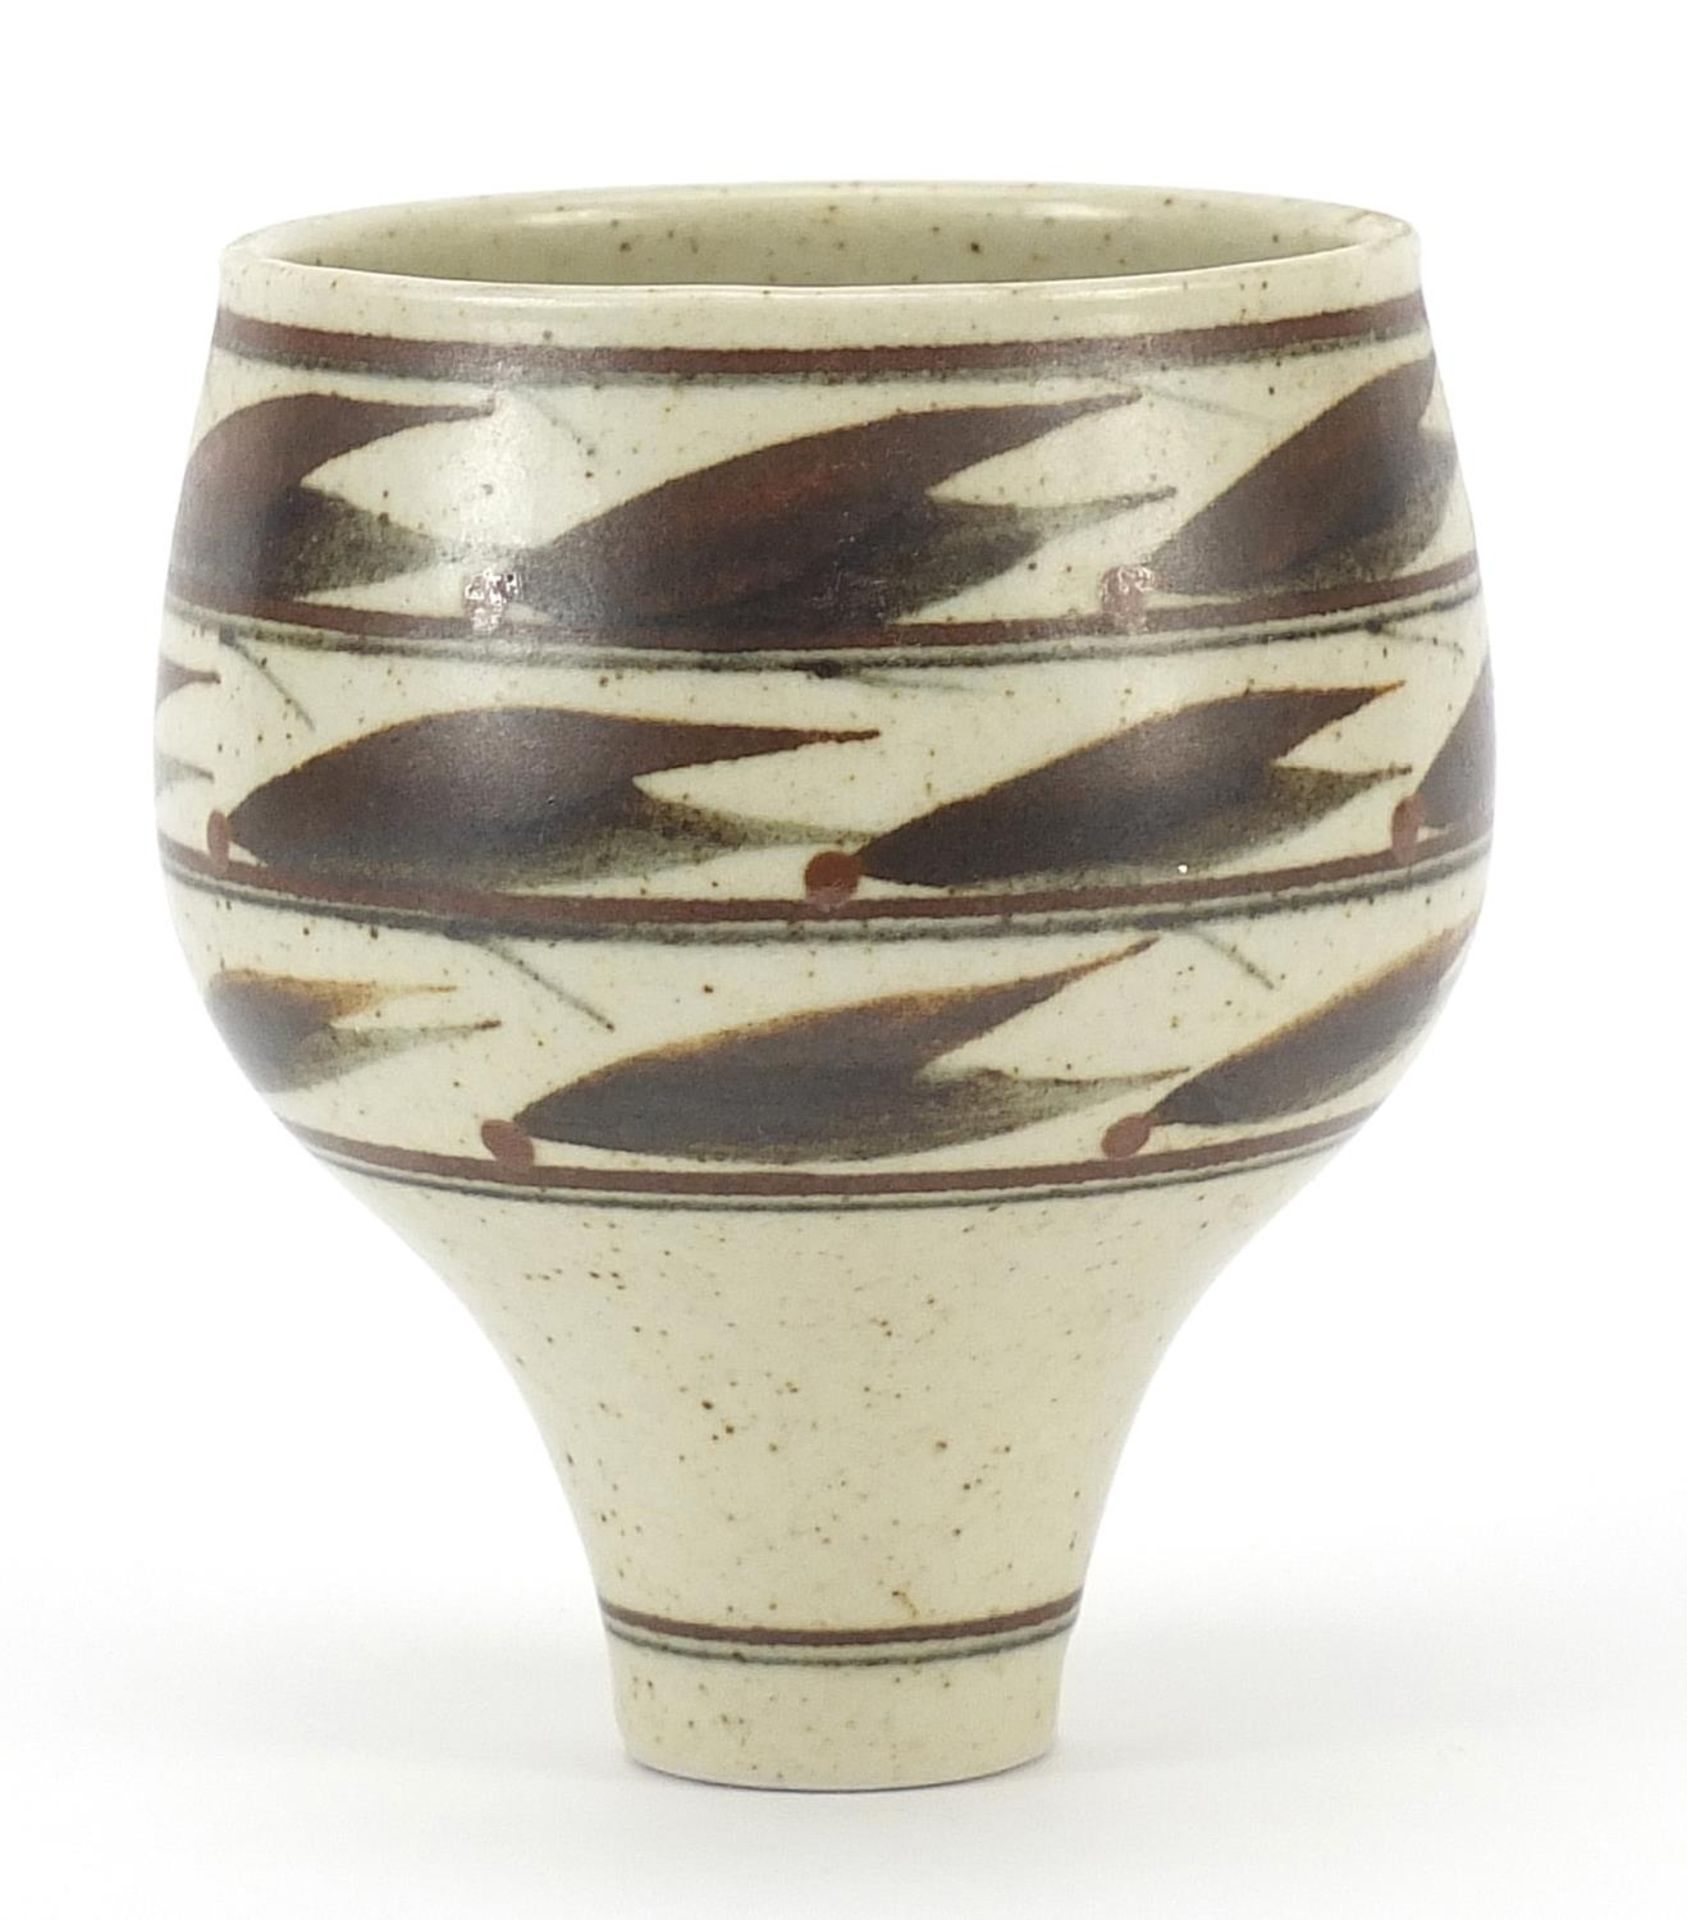 Derek Clarkson studio pottery bowl, 12.5cm high